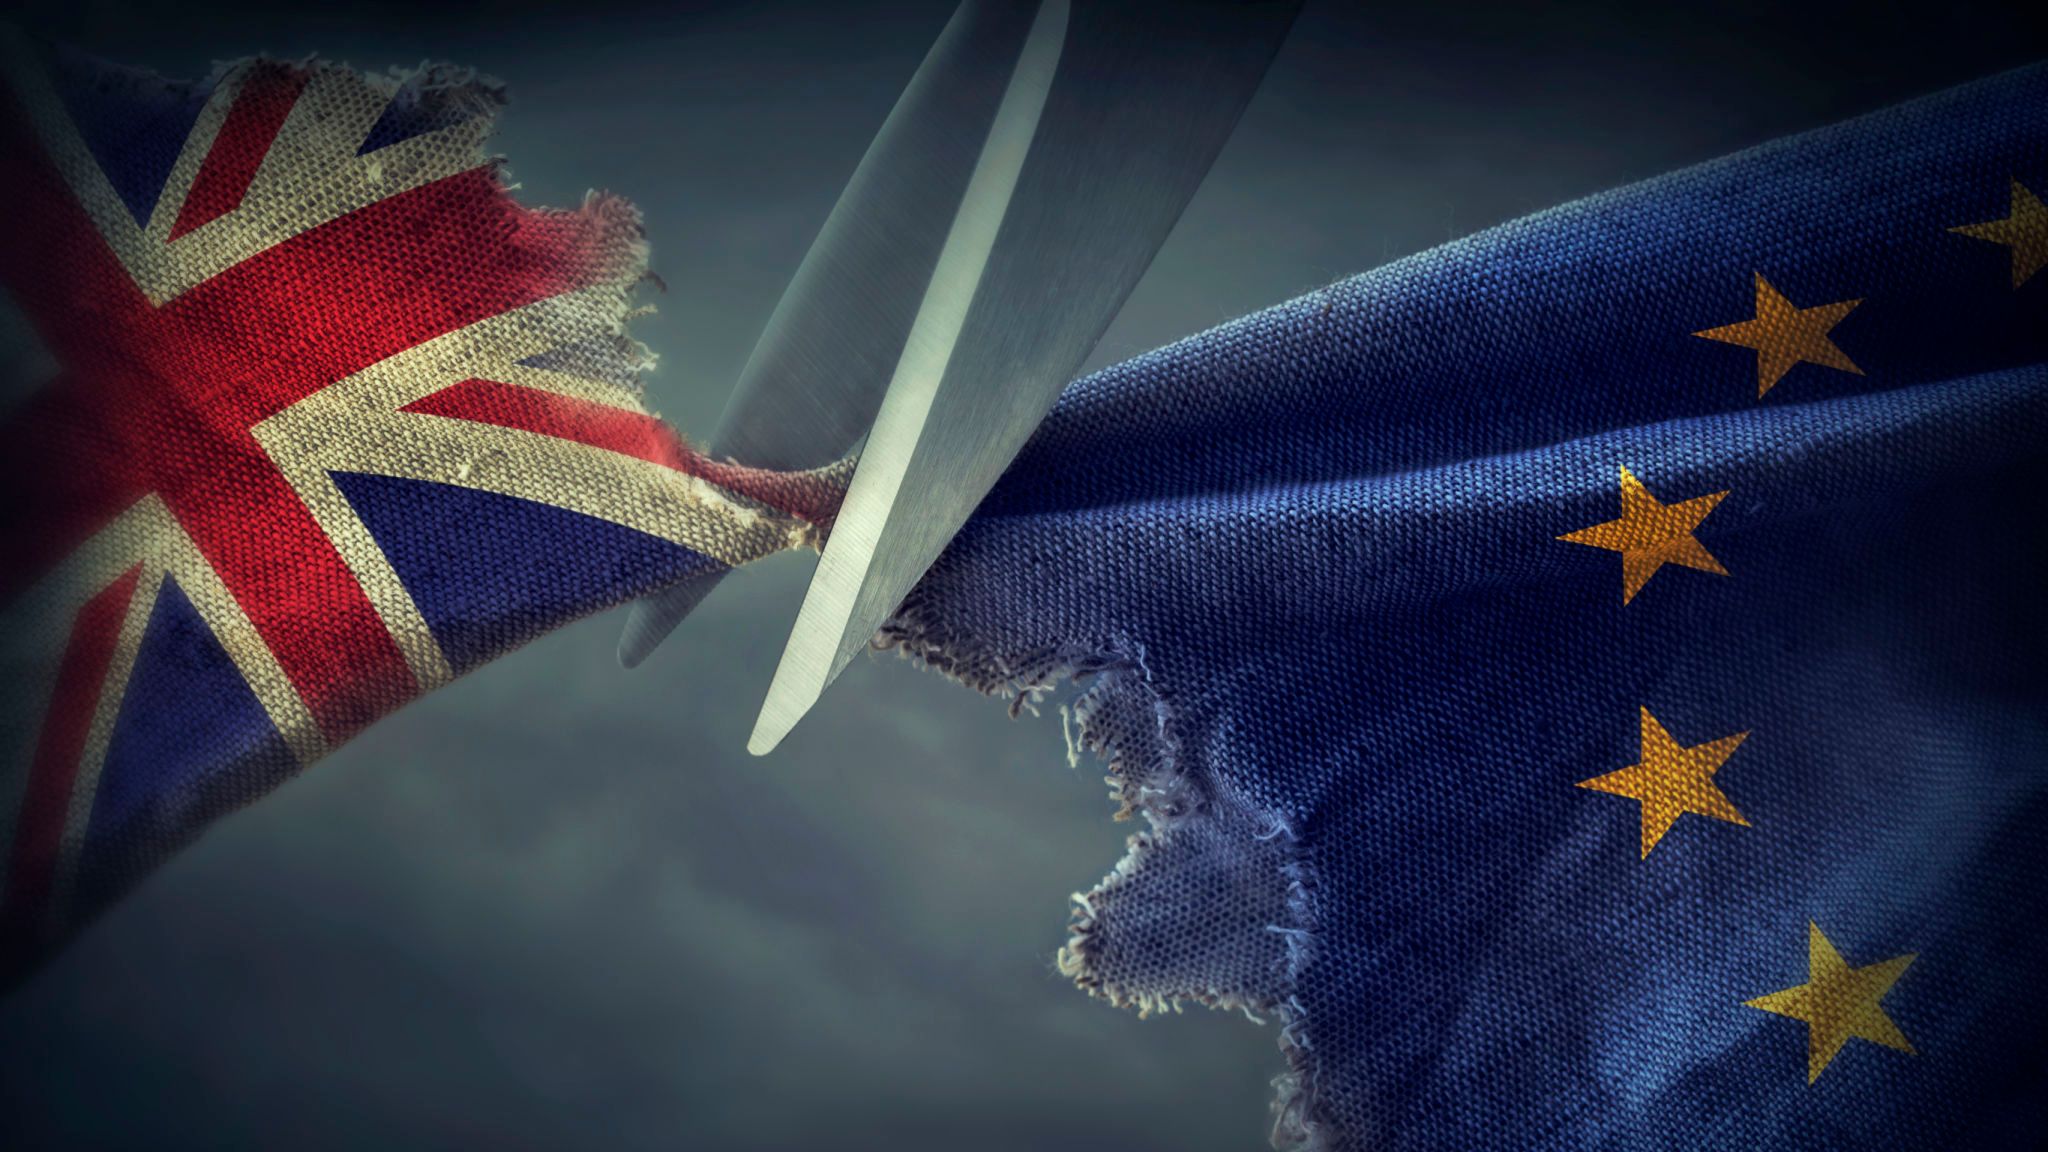 نگاه پرس تی وی به تبعات اقتصادی خروج بدون توافق بریتانیا از اتحادیه اروپا